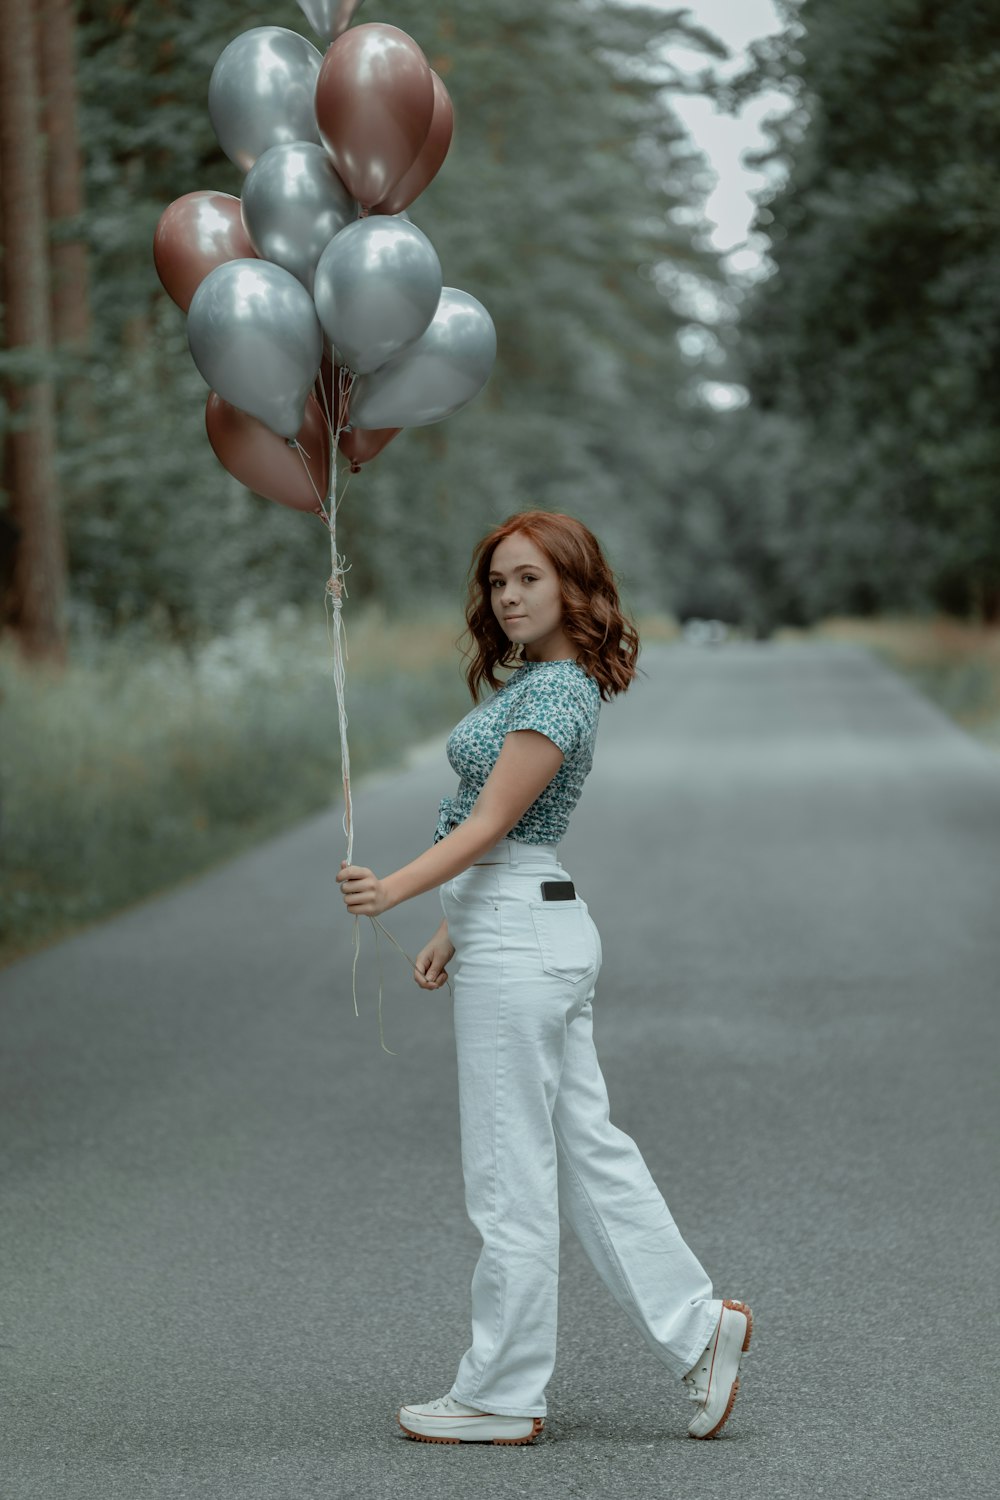 a person holding a balloon